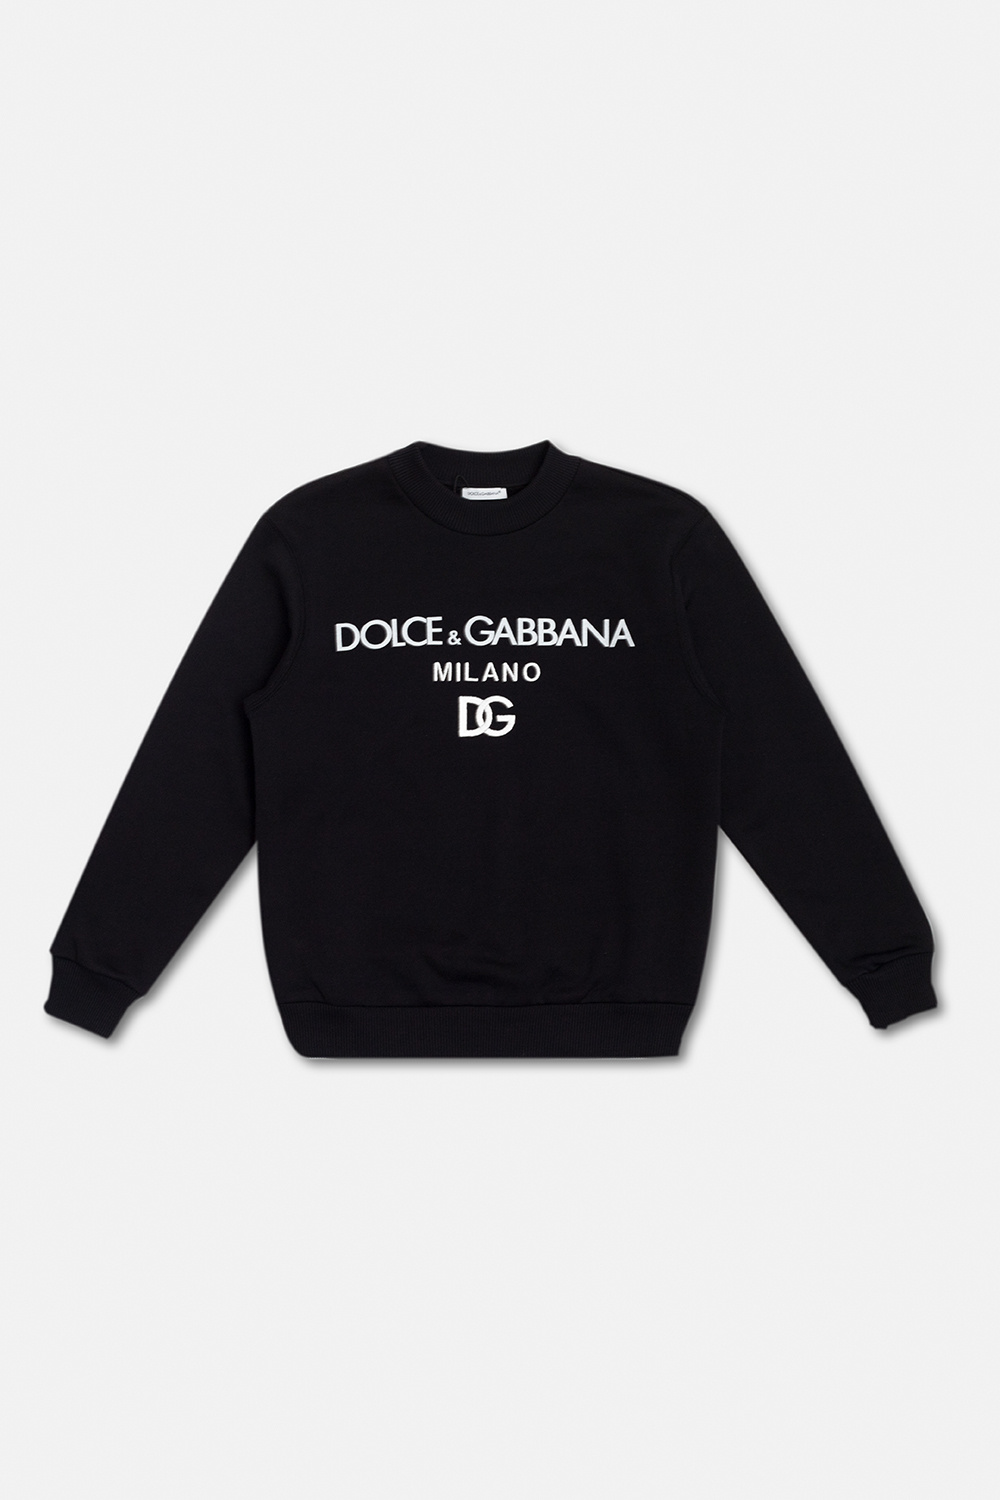 Dolce & Gabbana Kids harzn dolce gabbana kidswear